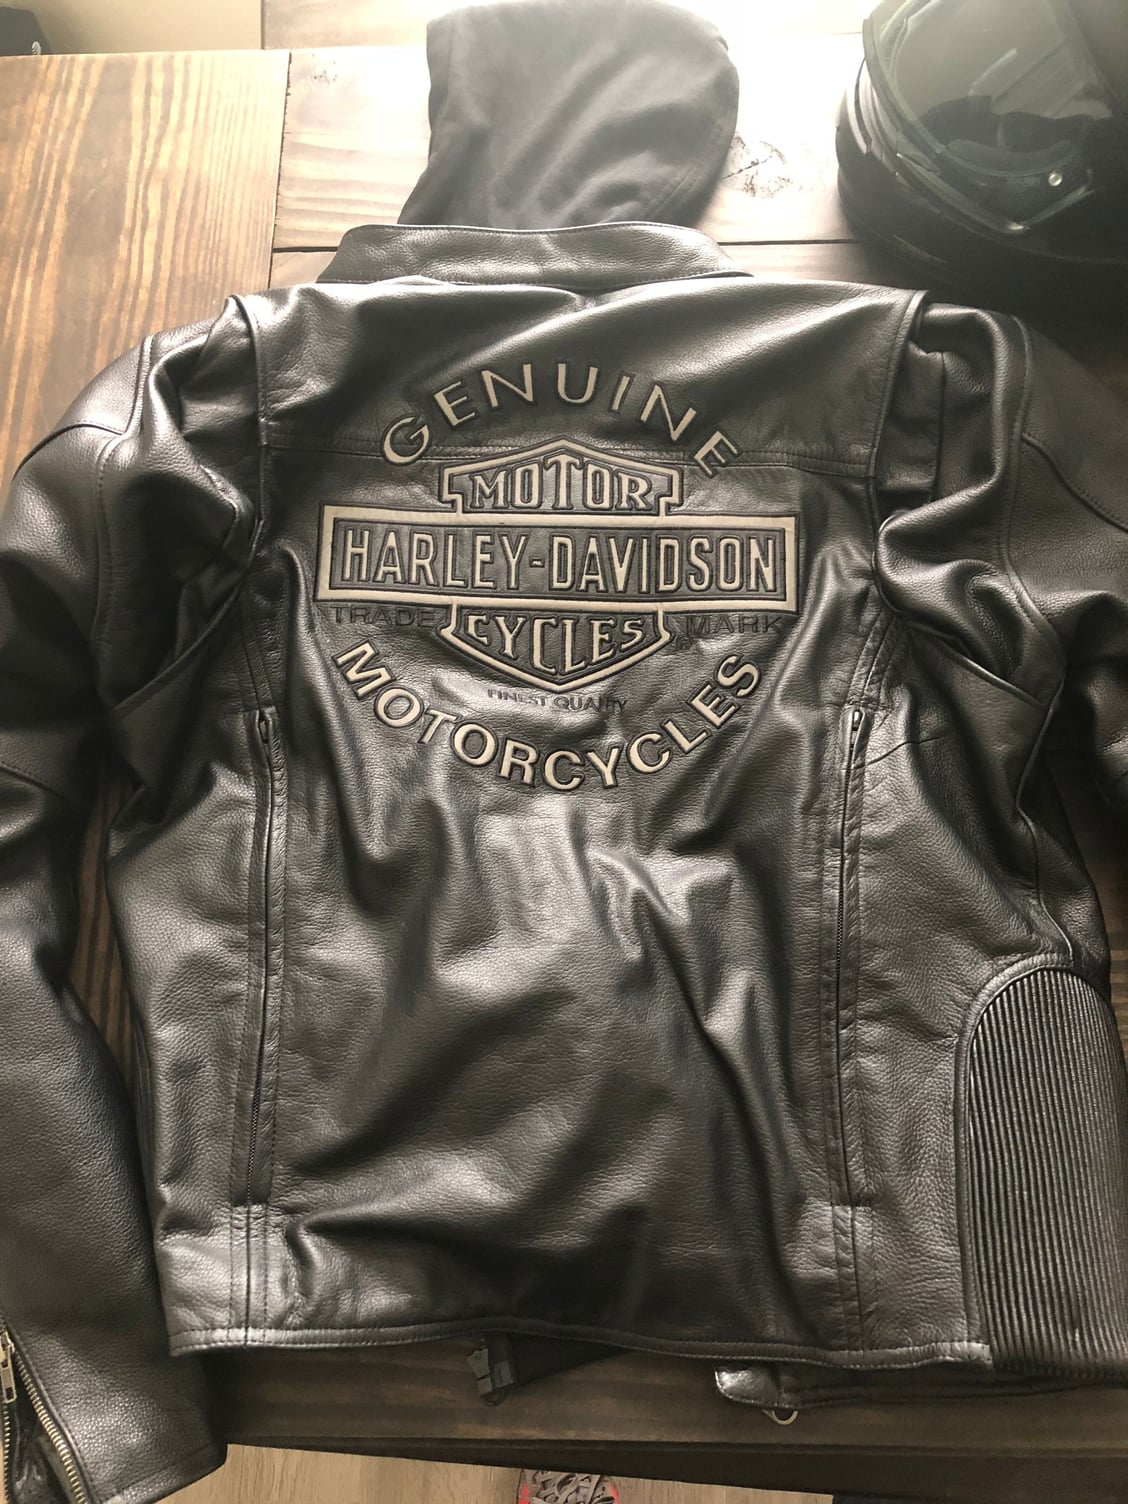 Harley road warrior 3 in 1 leather jacket - Harley Davidson Forums